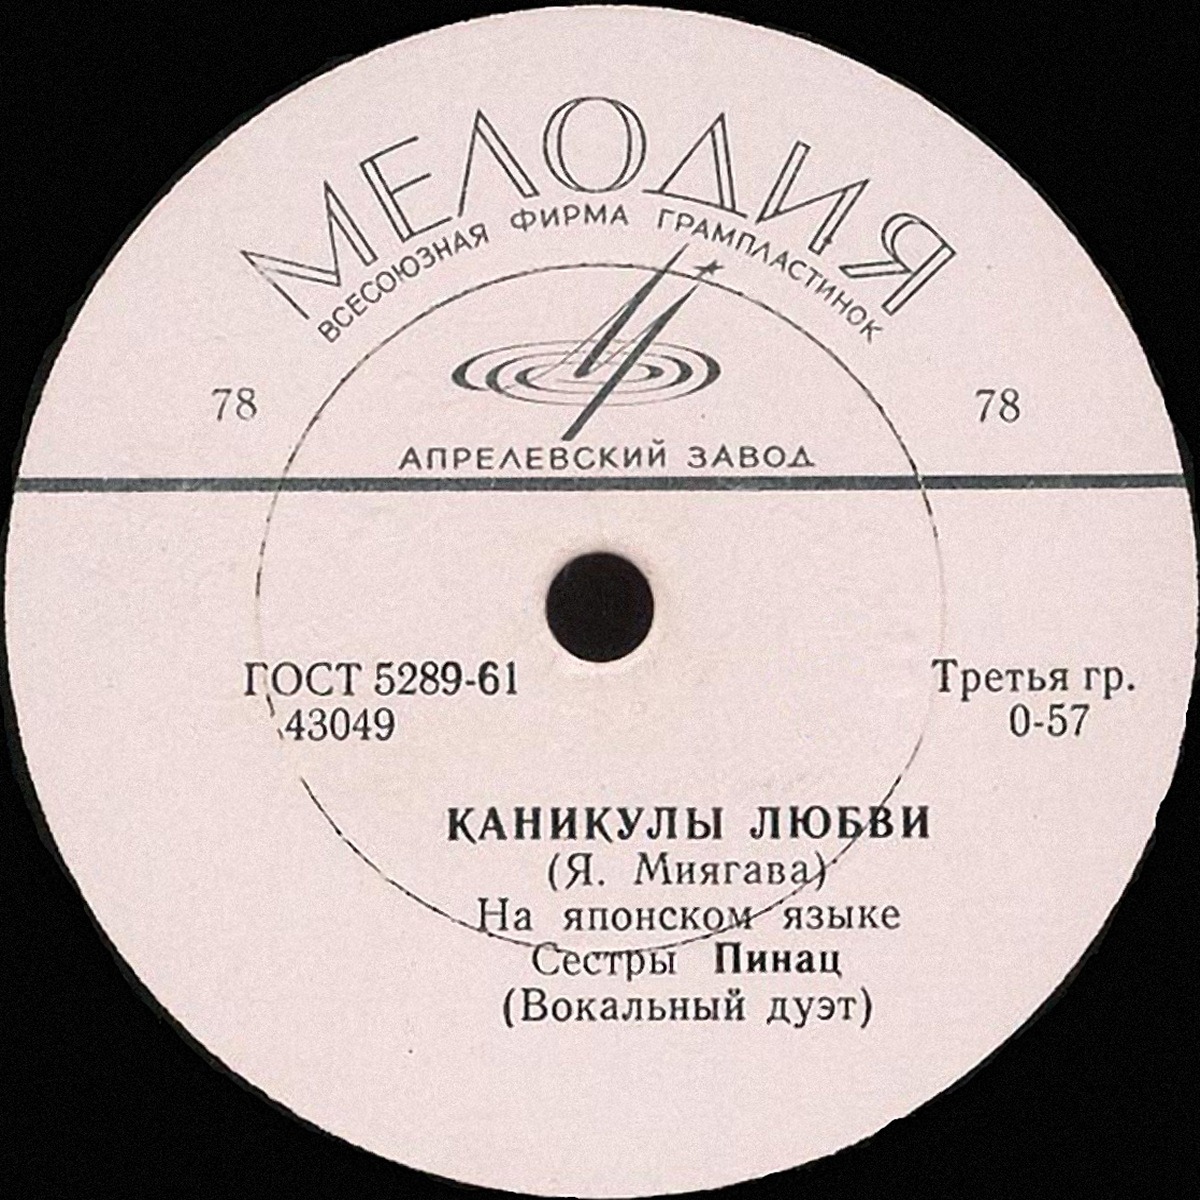 Как японская песенка про любовь стала хитом в СССР 1970-х